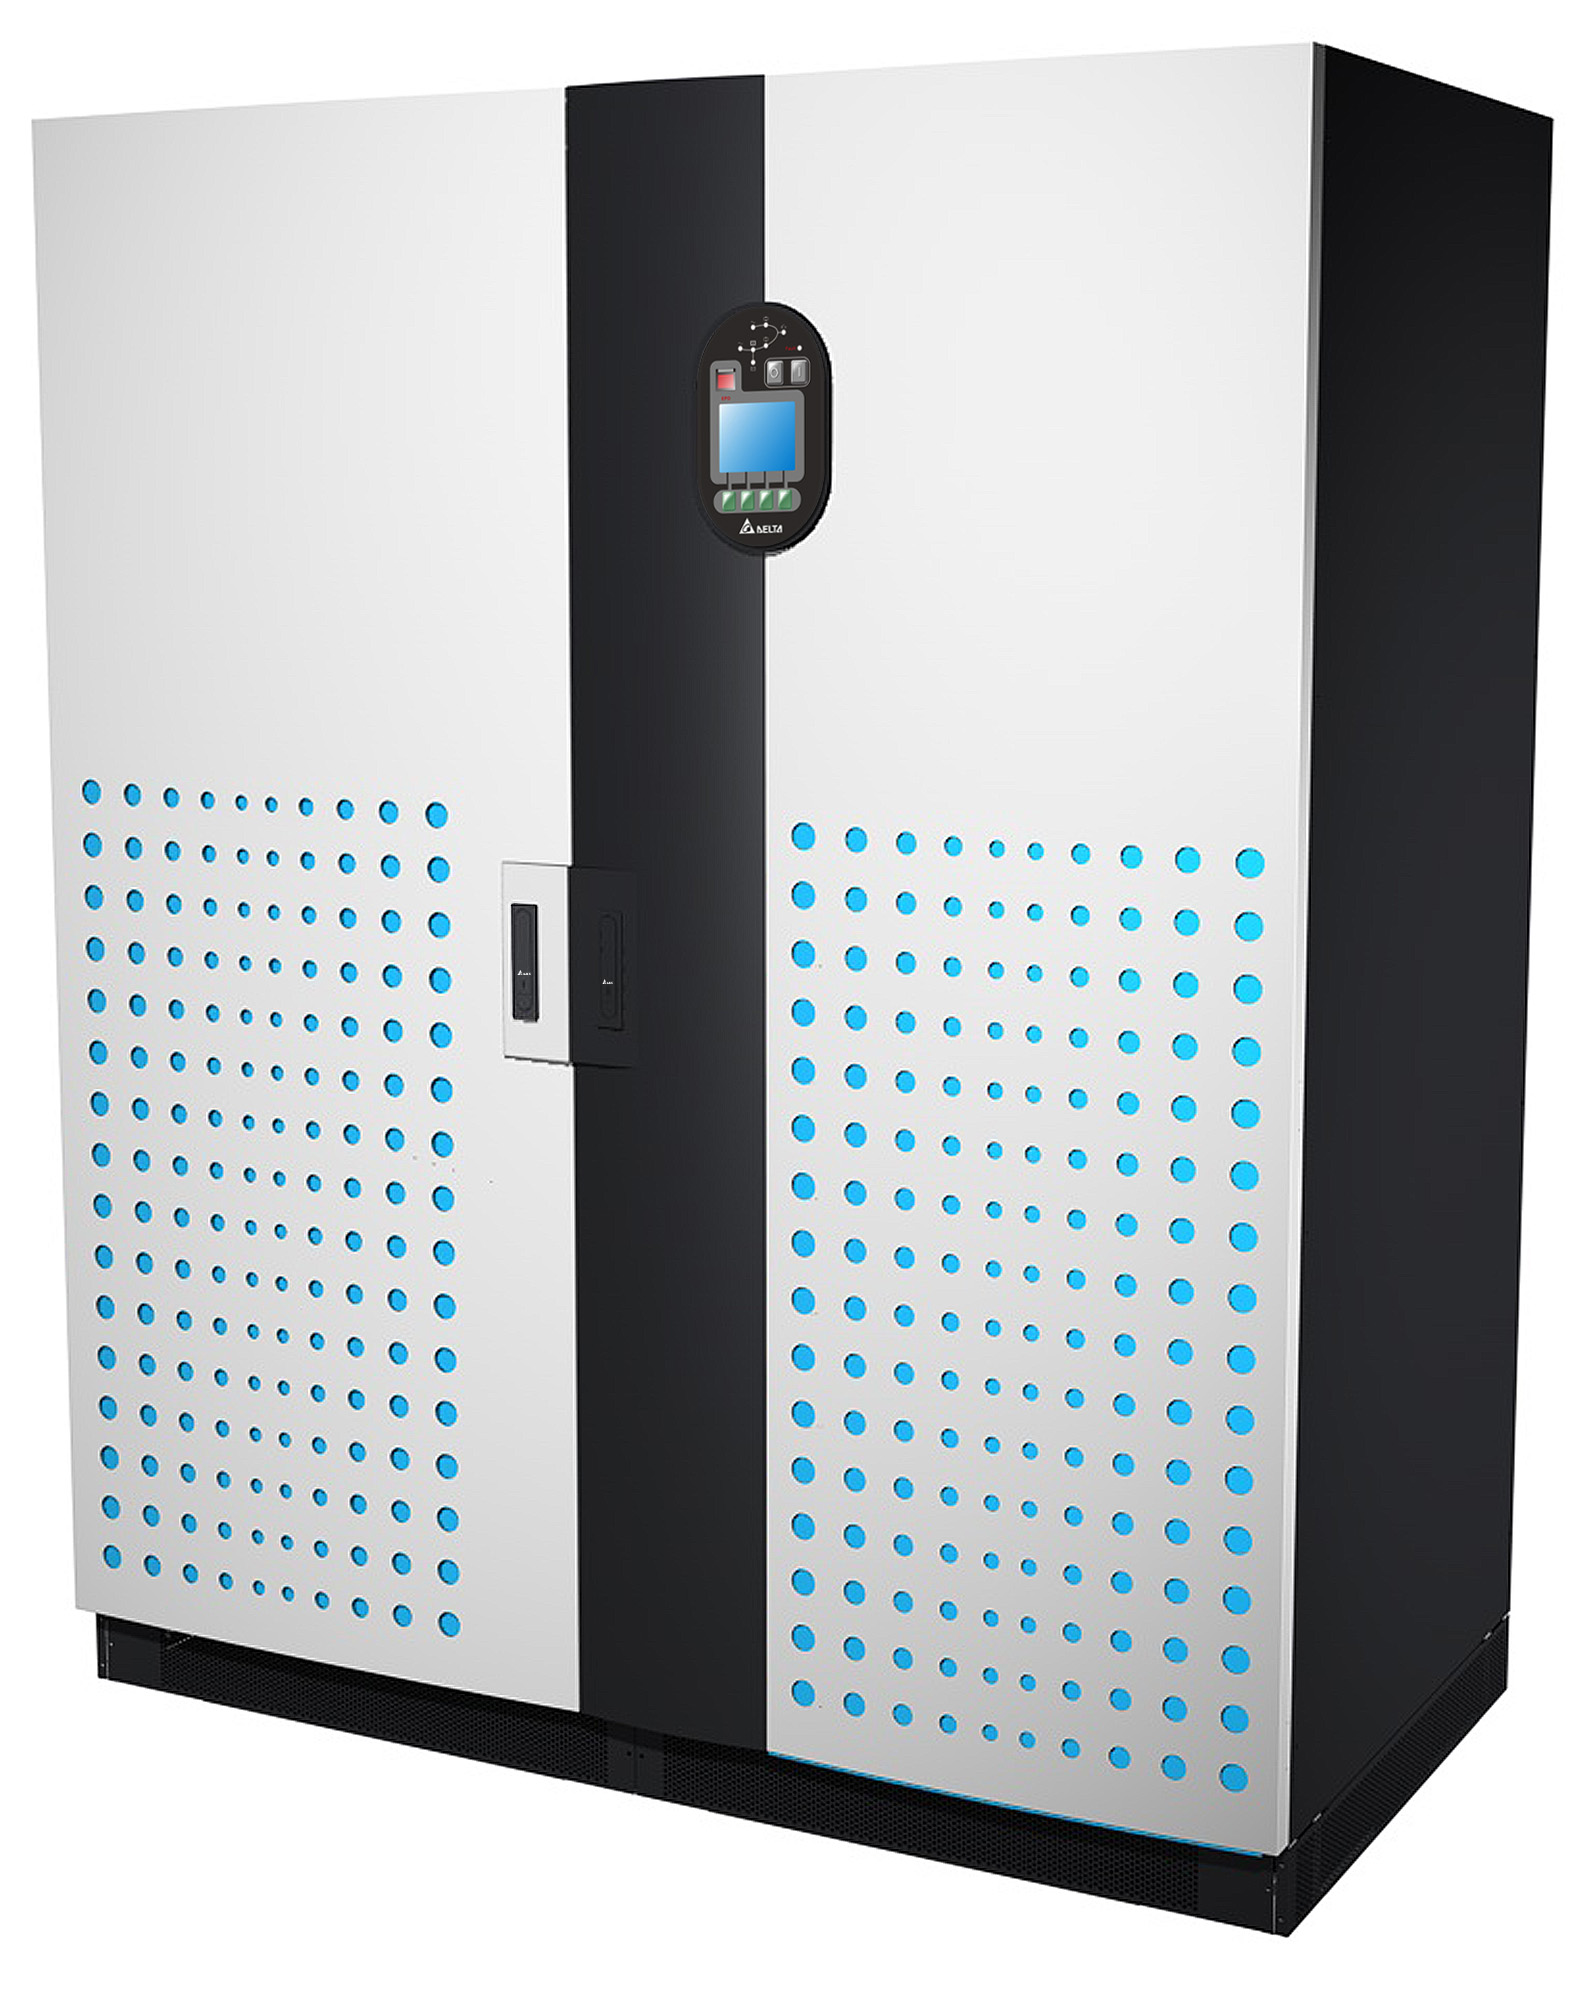 台达推出Ultron DPS系列高效率UPS新机种应用在绿色数据中心等关键设备